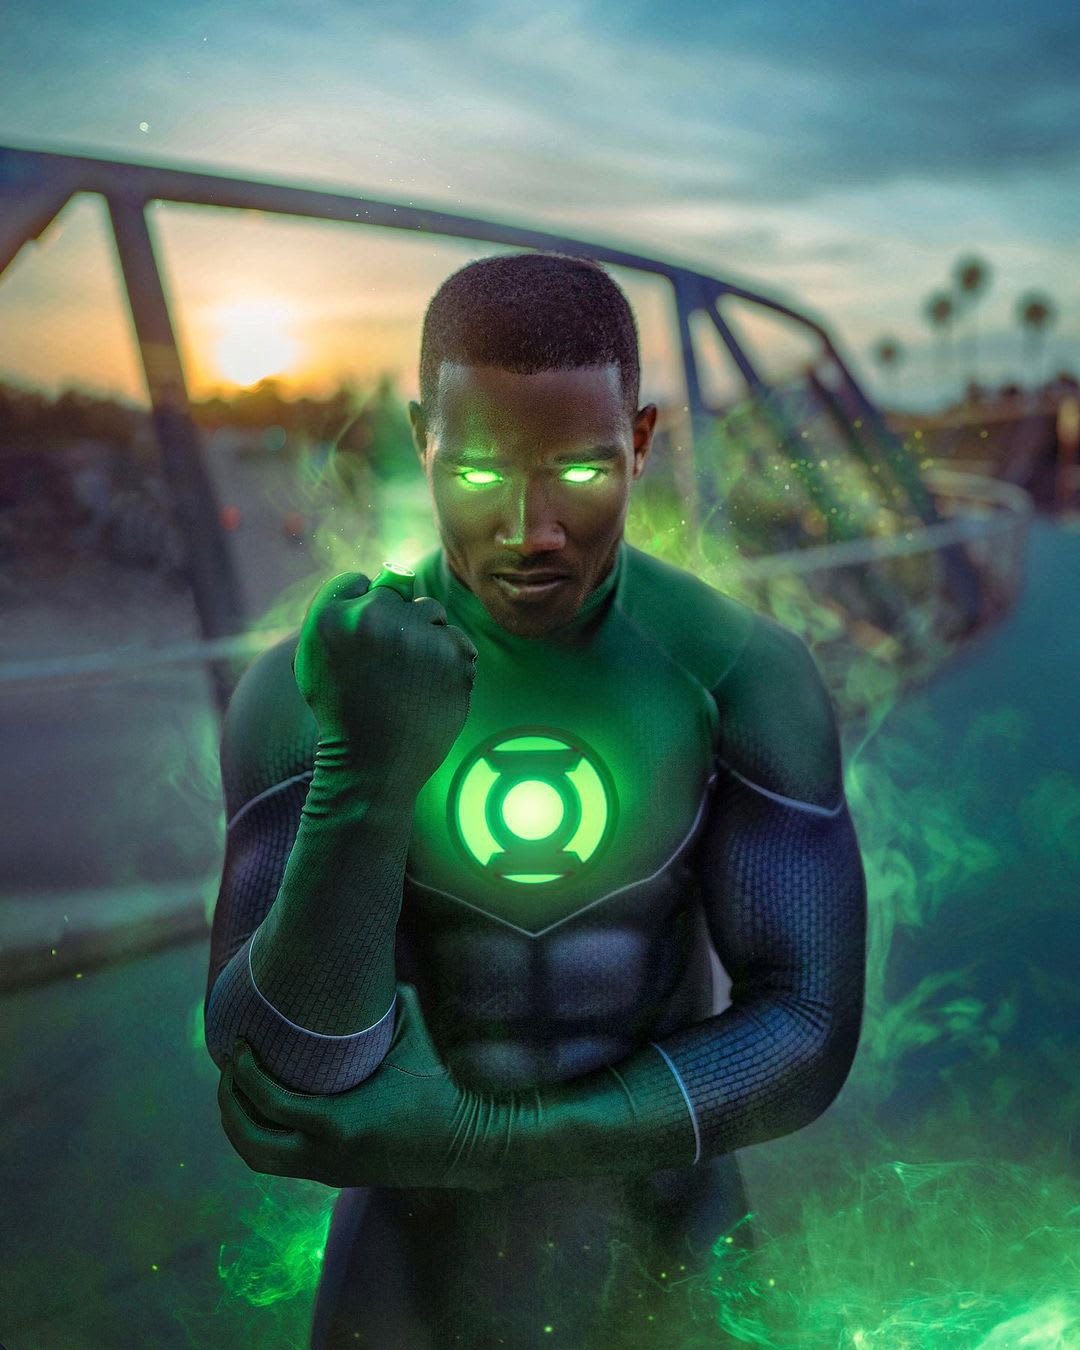 [Cosplay] Green Lantern by Matt Hackett